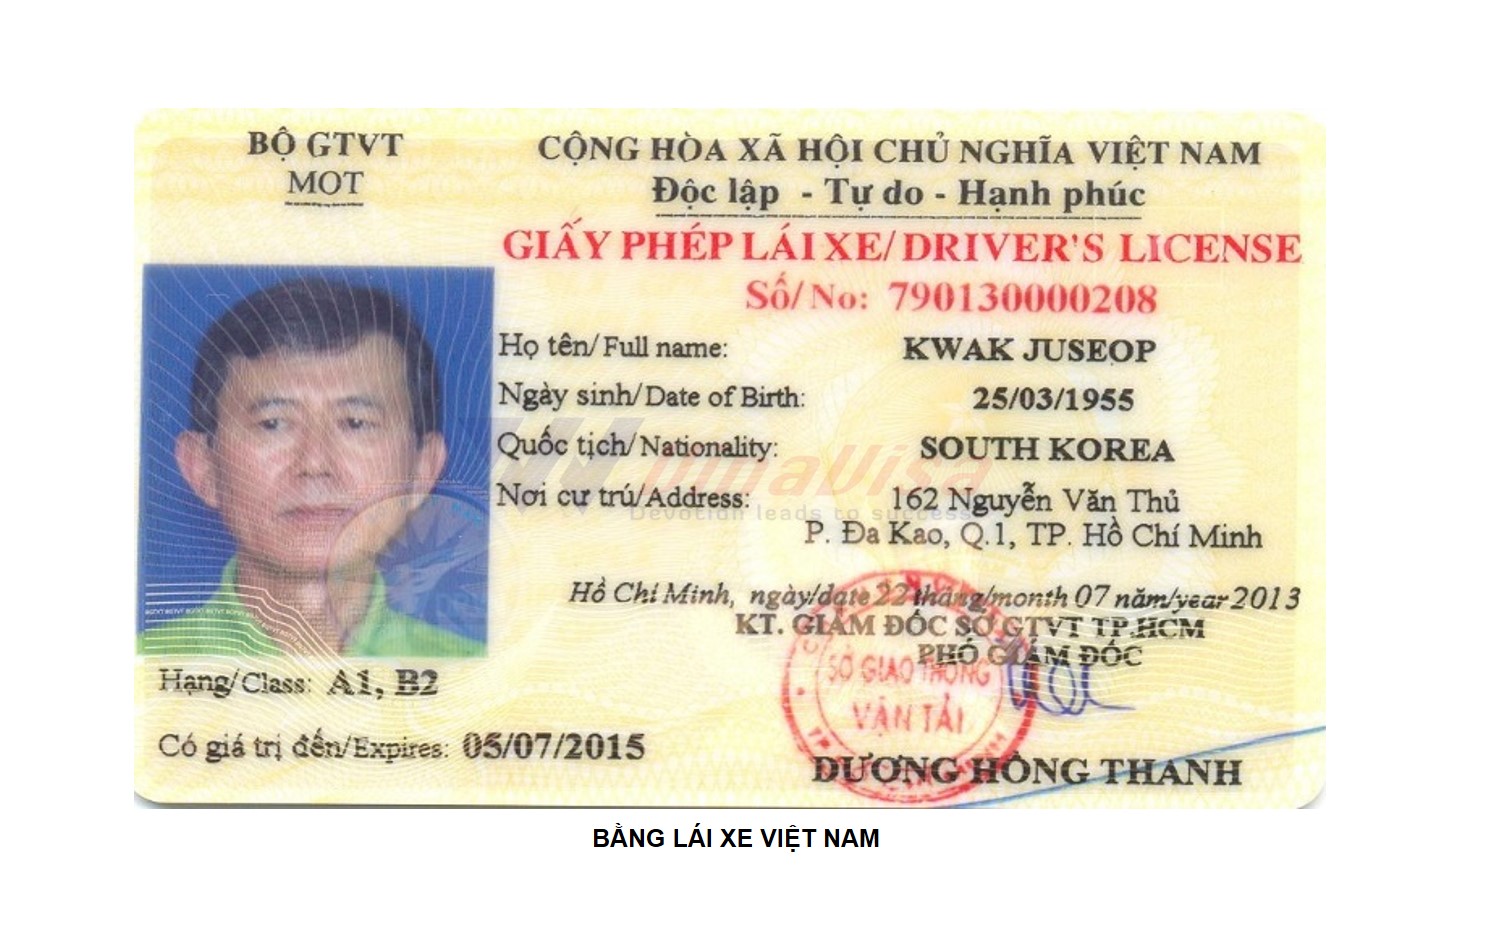 Cấp Đổi Bằng Lái Xe Việt Nam cho người nước ngoài